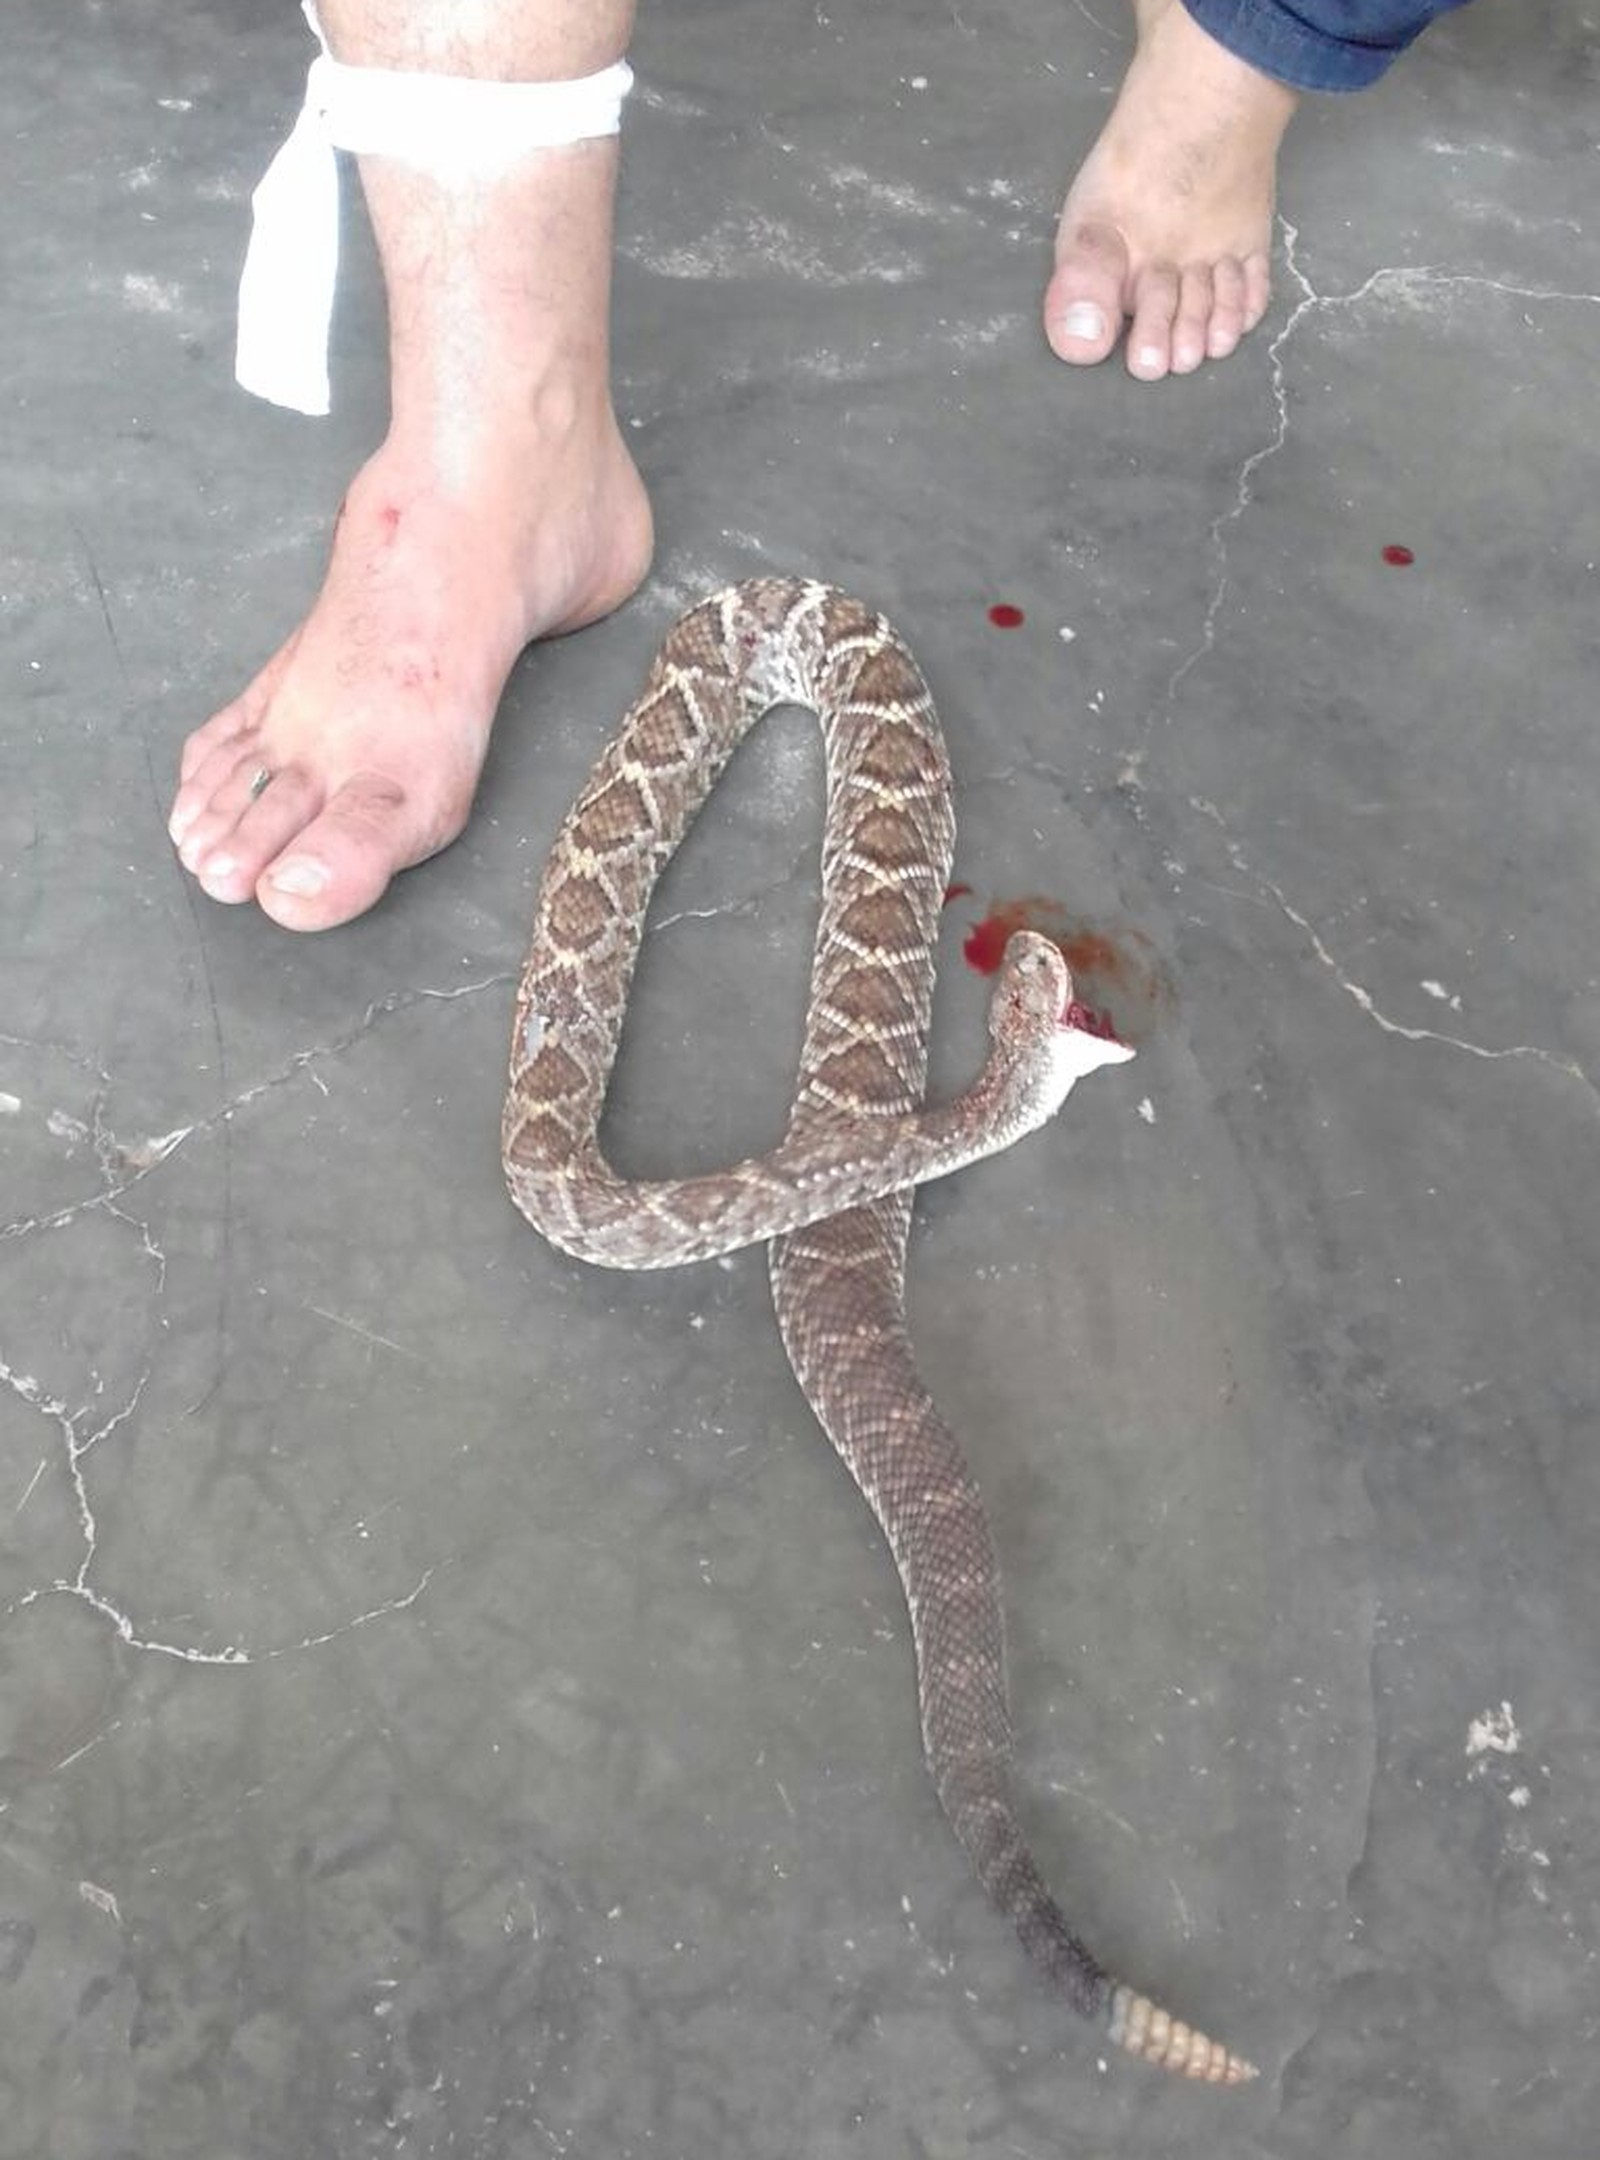 Vereador de Juru foi picado por cascavel e matou cobra com mordida, no Sertão da Paraíba (Foto: Álvaro Teixeira/Arquivo Pessoal)